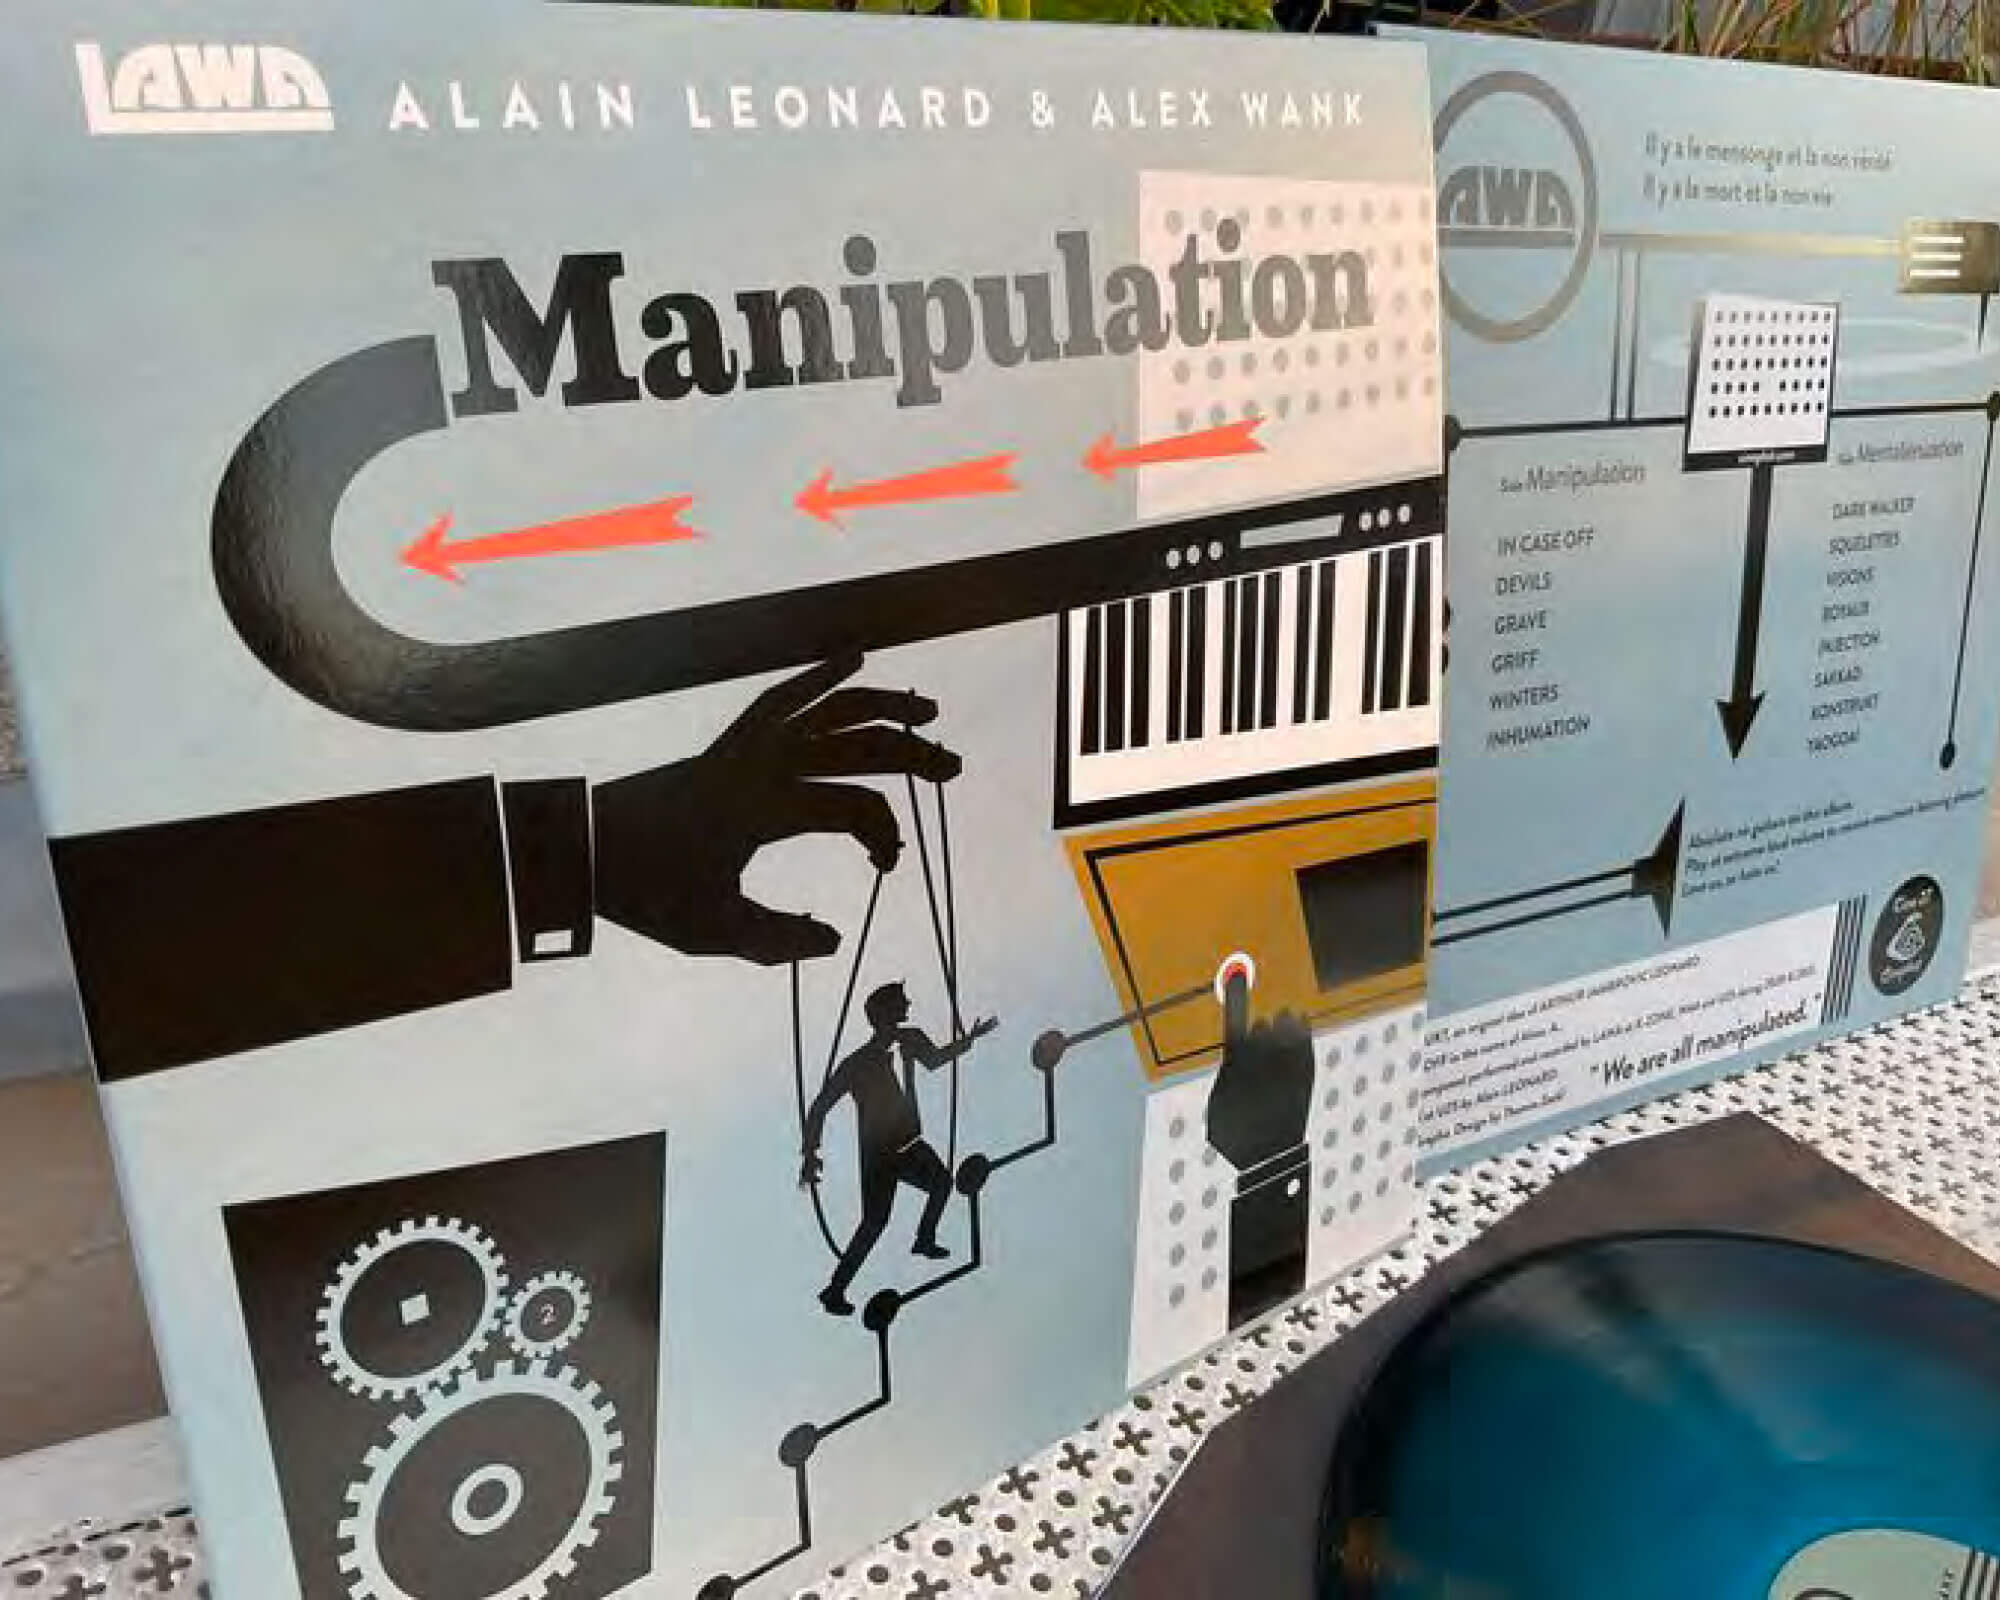 Cineploit Records: LAWA - Manipulation